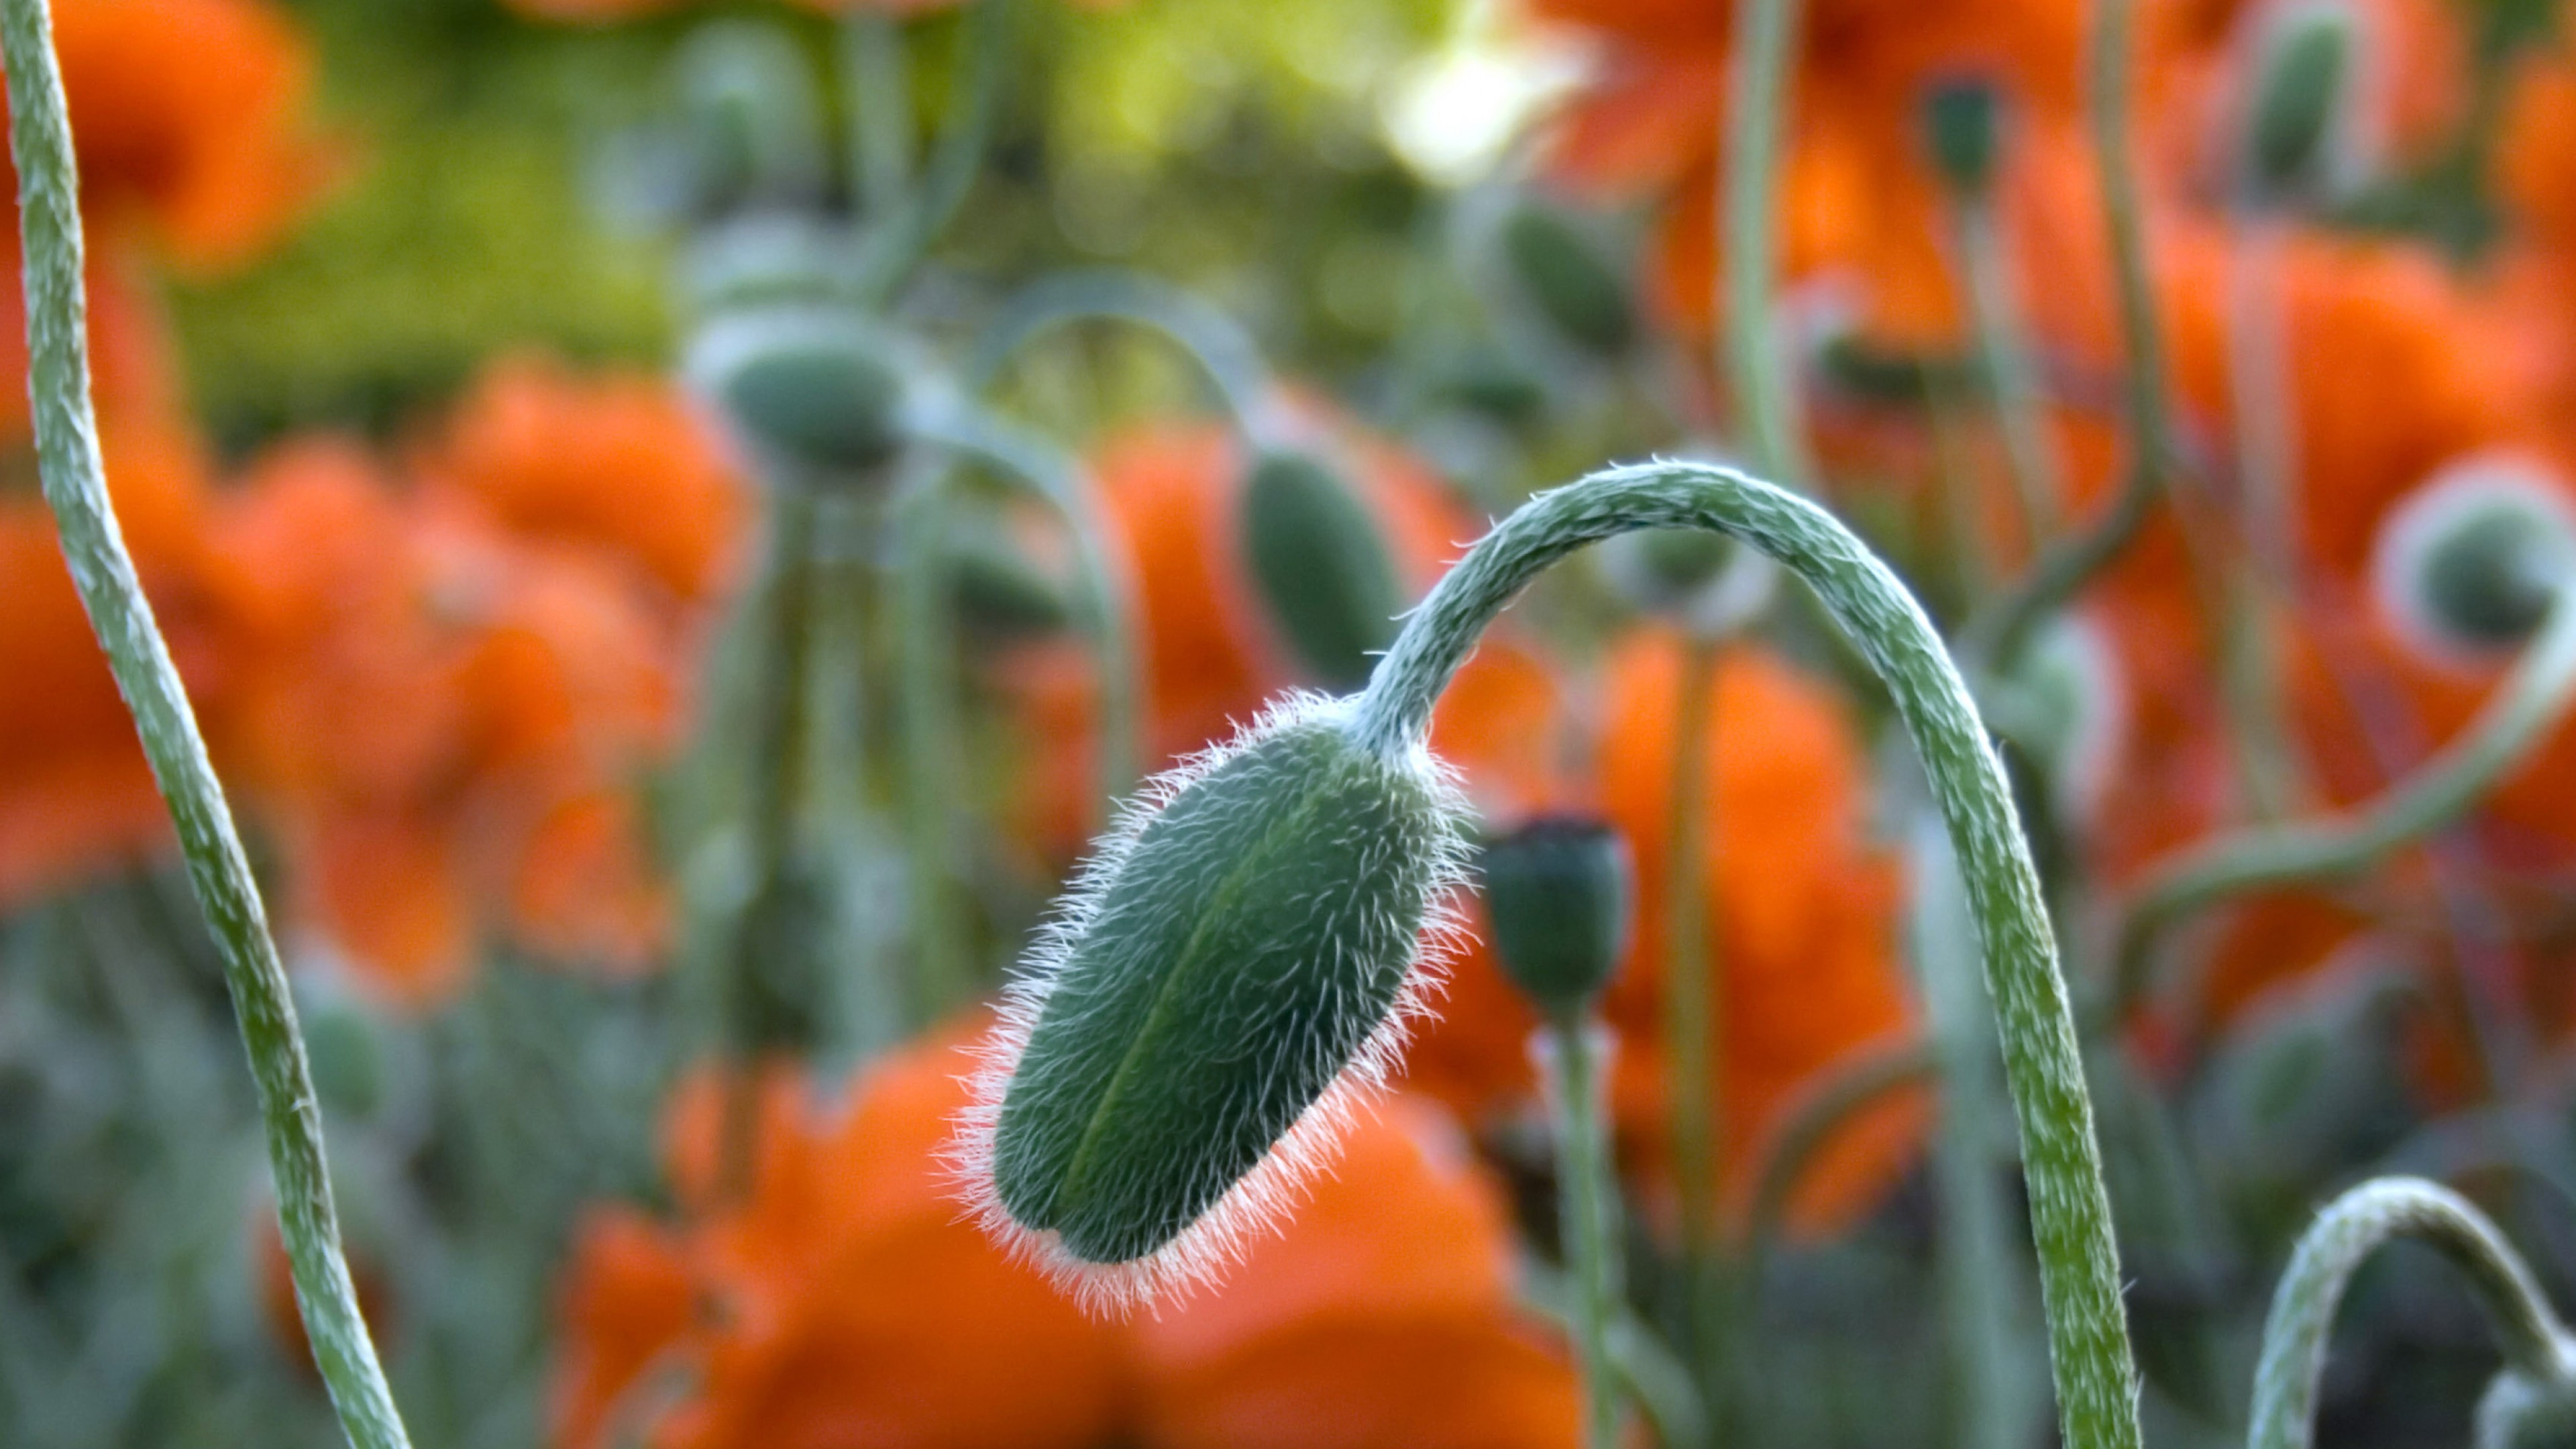 تصویر جالب دشت گل نارنجی برای دسکتاپ با کیفیت اولترا اچ دی